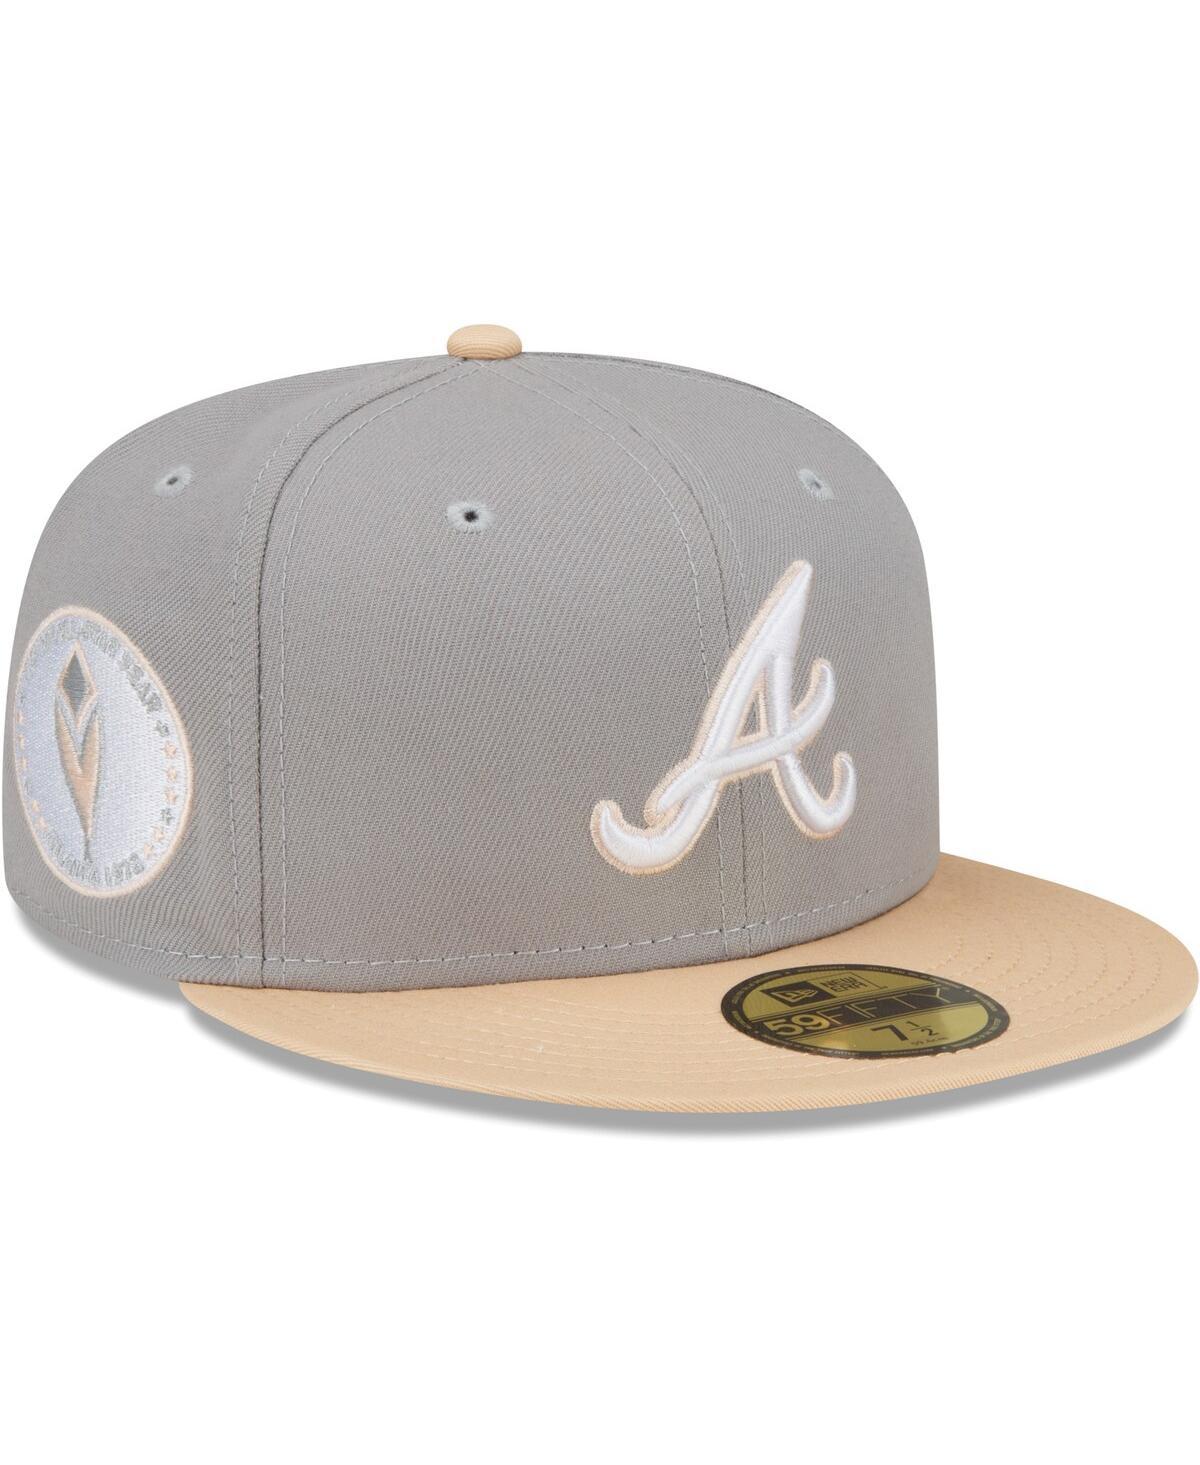 Atlanta Braves New Era Classic Neo 39THIRTY Flex Hat - Gray